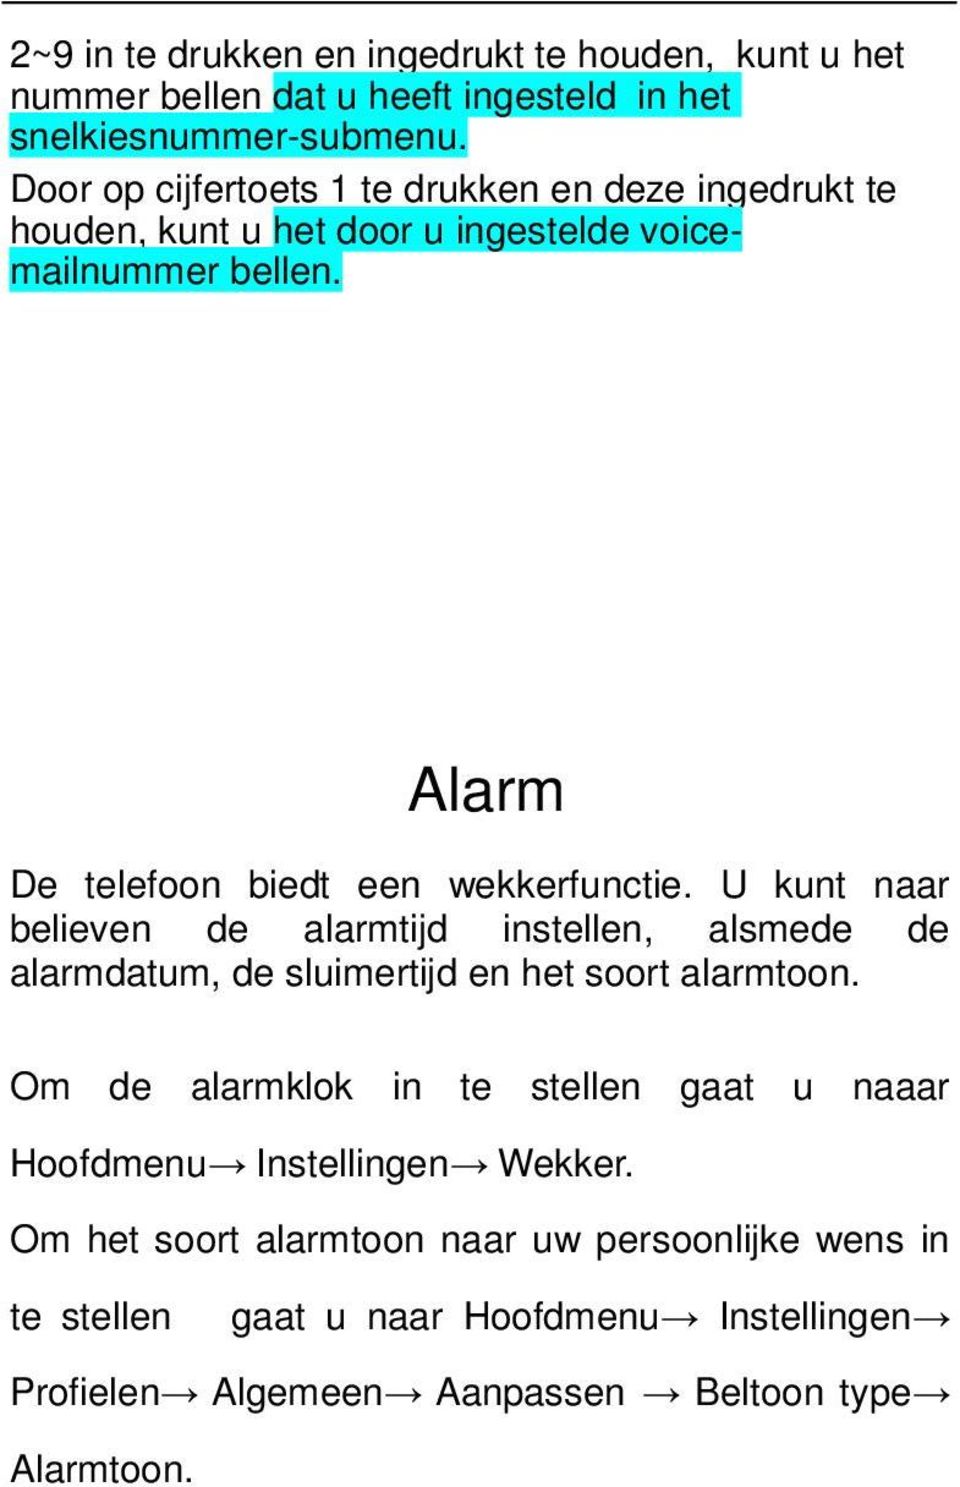 Alarm De telefoon biedt een wekkerfunctie. U kunt naar believen de alarmtijd instellen, alsmede de alarmdatum, de sluimertijd en het soort alarmtoon.